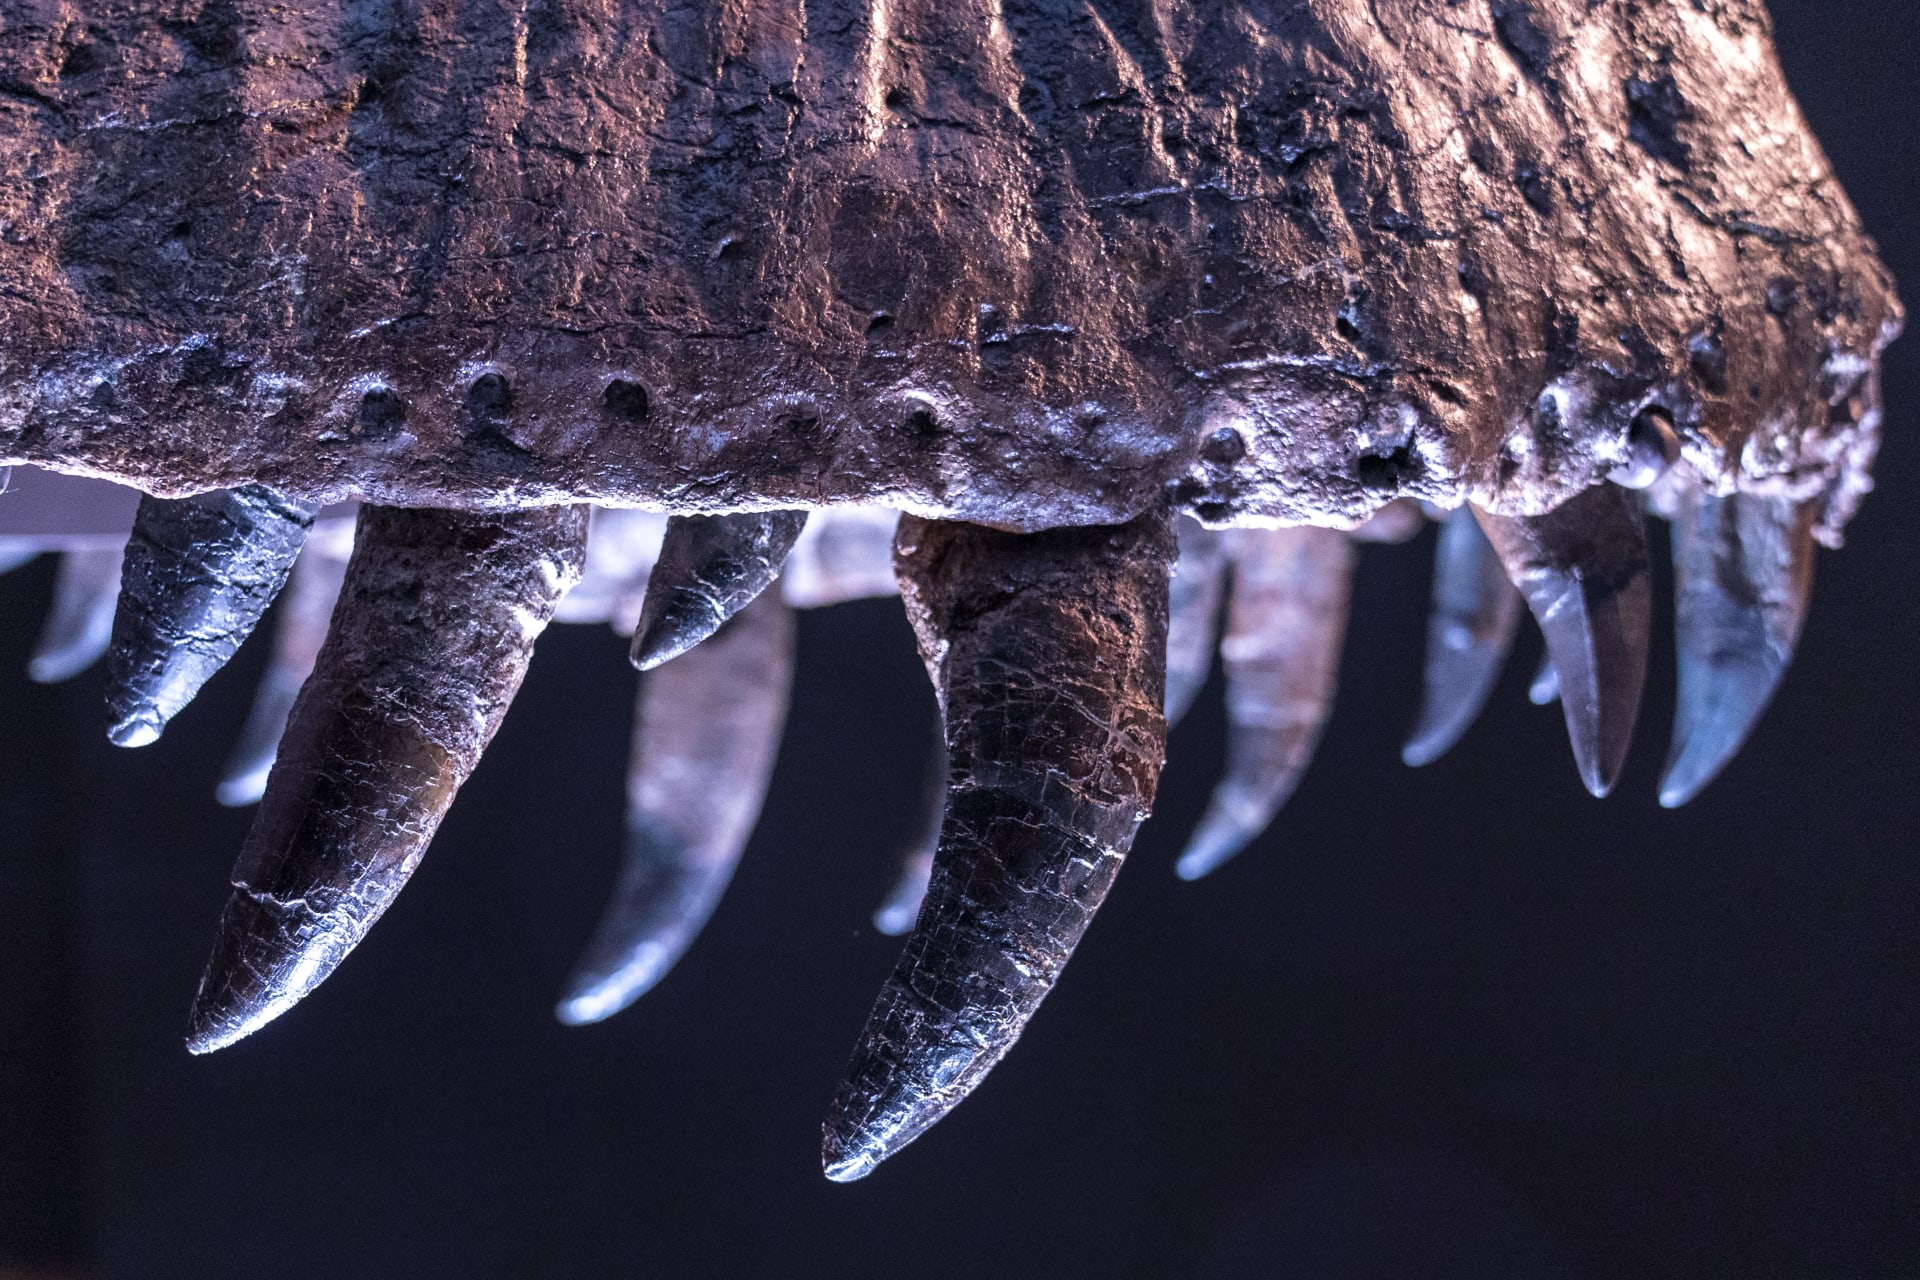 Stanův nejdelší zub je dlouhý bezmála 30 centimetrů.